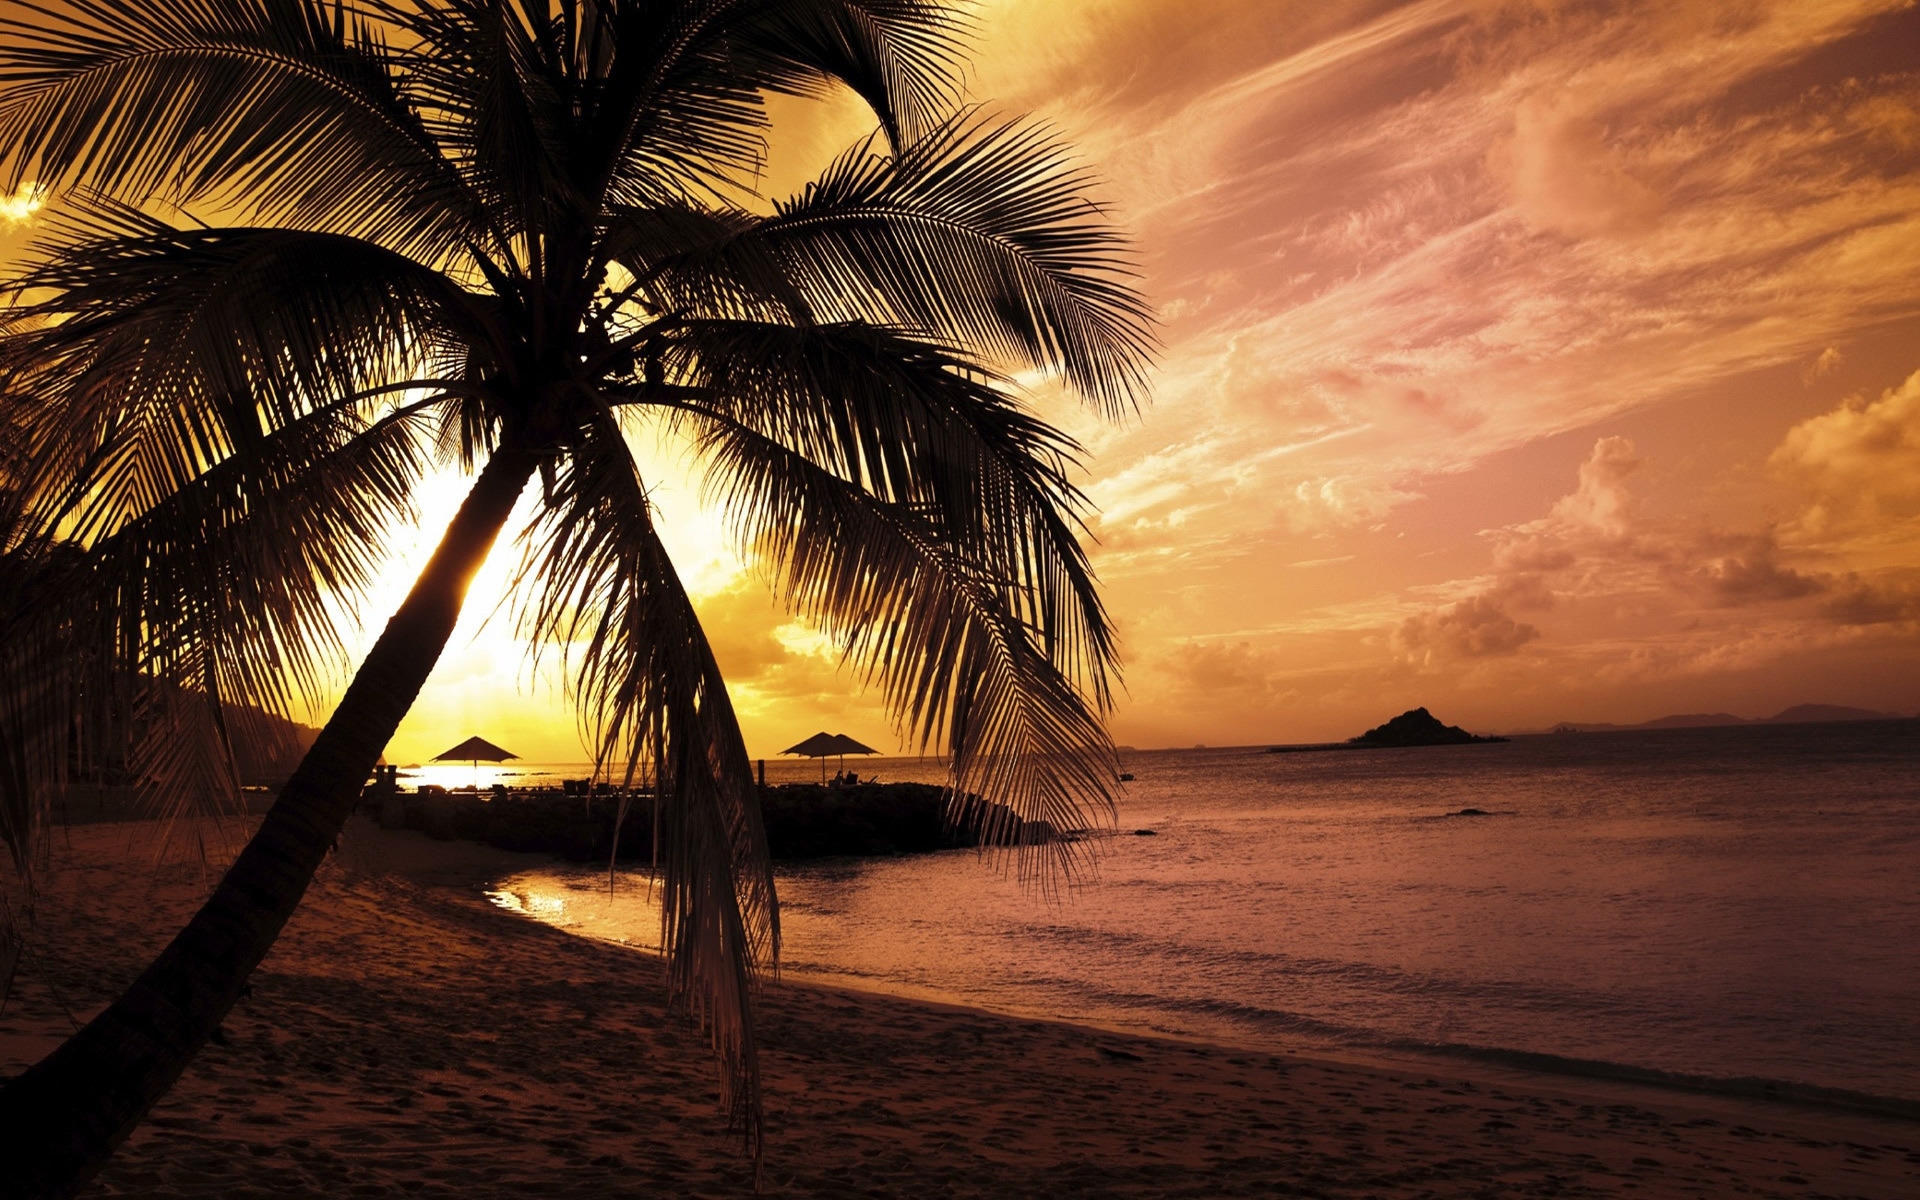 Beach Sunset for 1920 x 1200 widescreen resolution